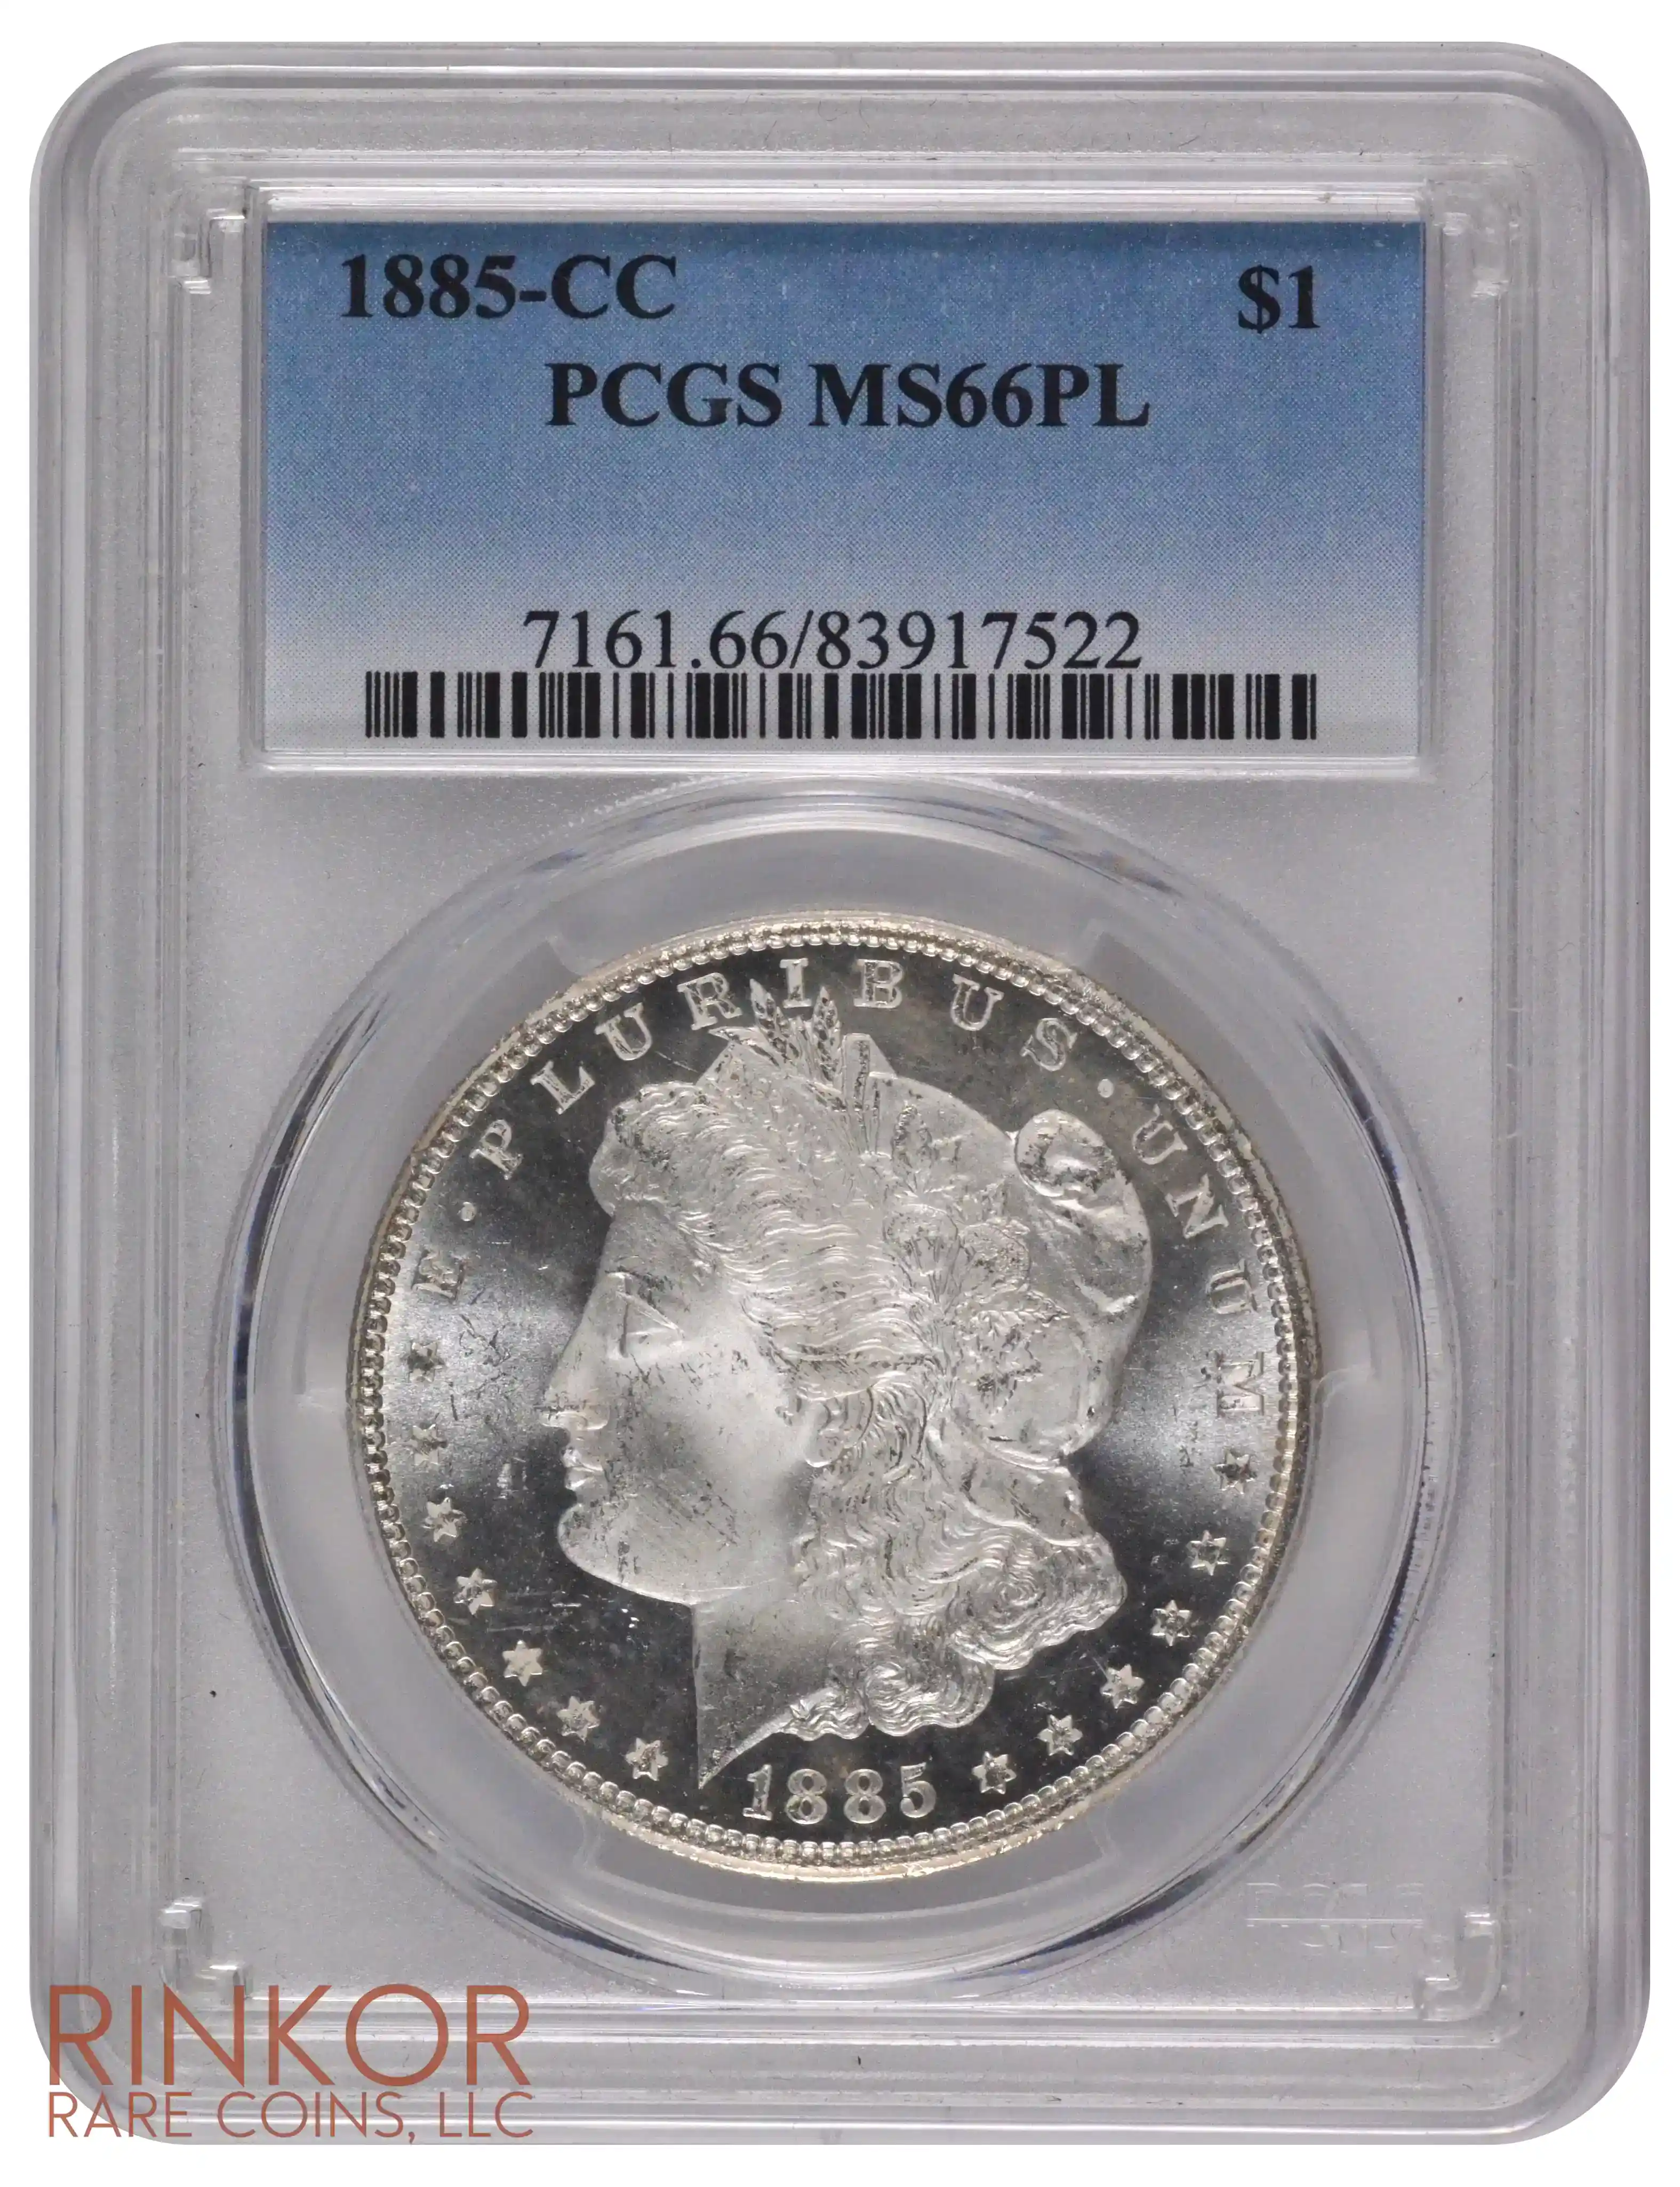 1885-CC $1 PCGS MS 66 PL